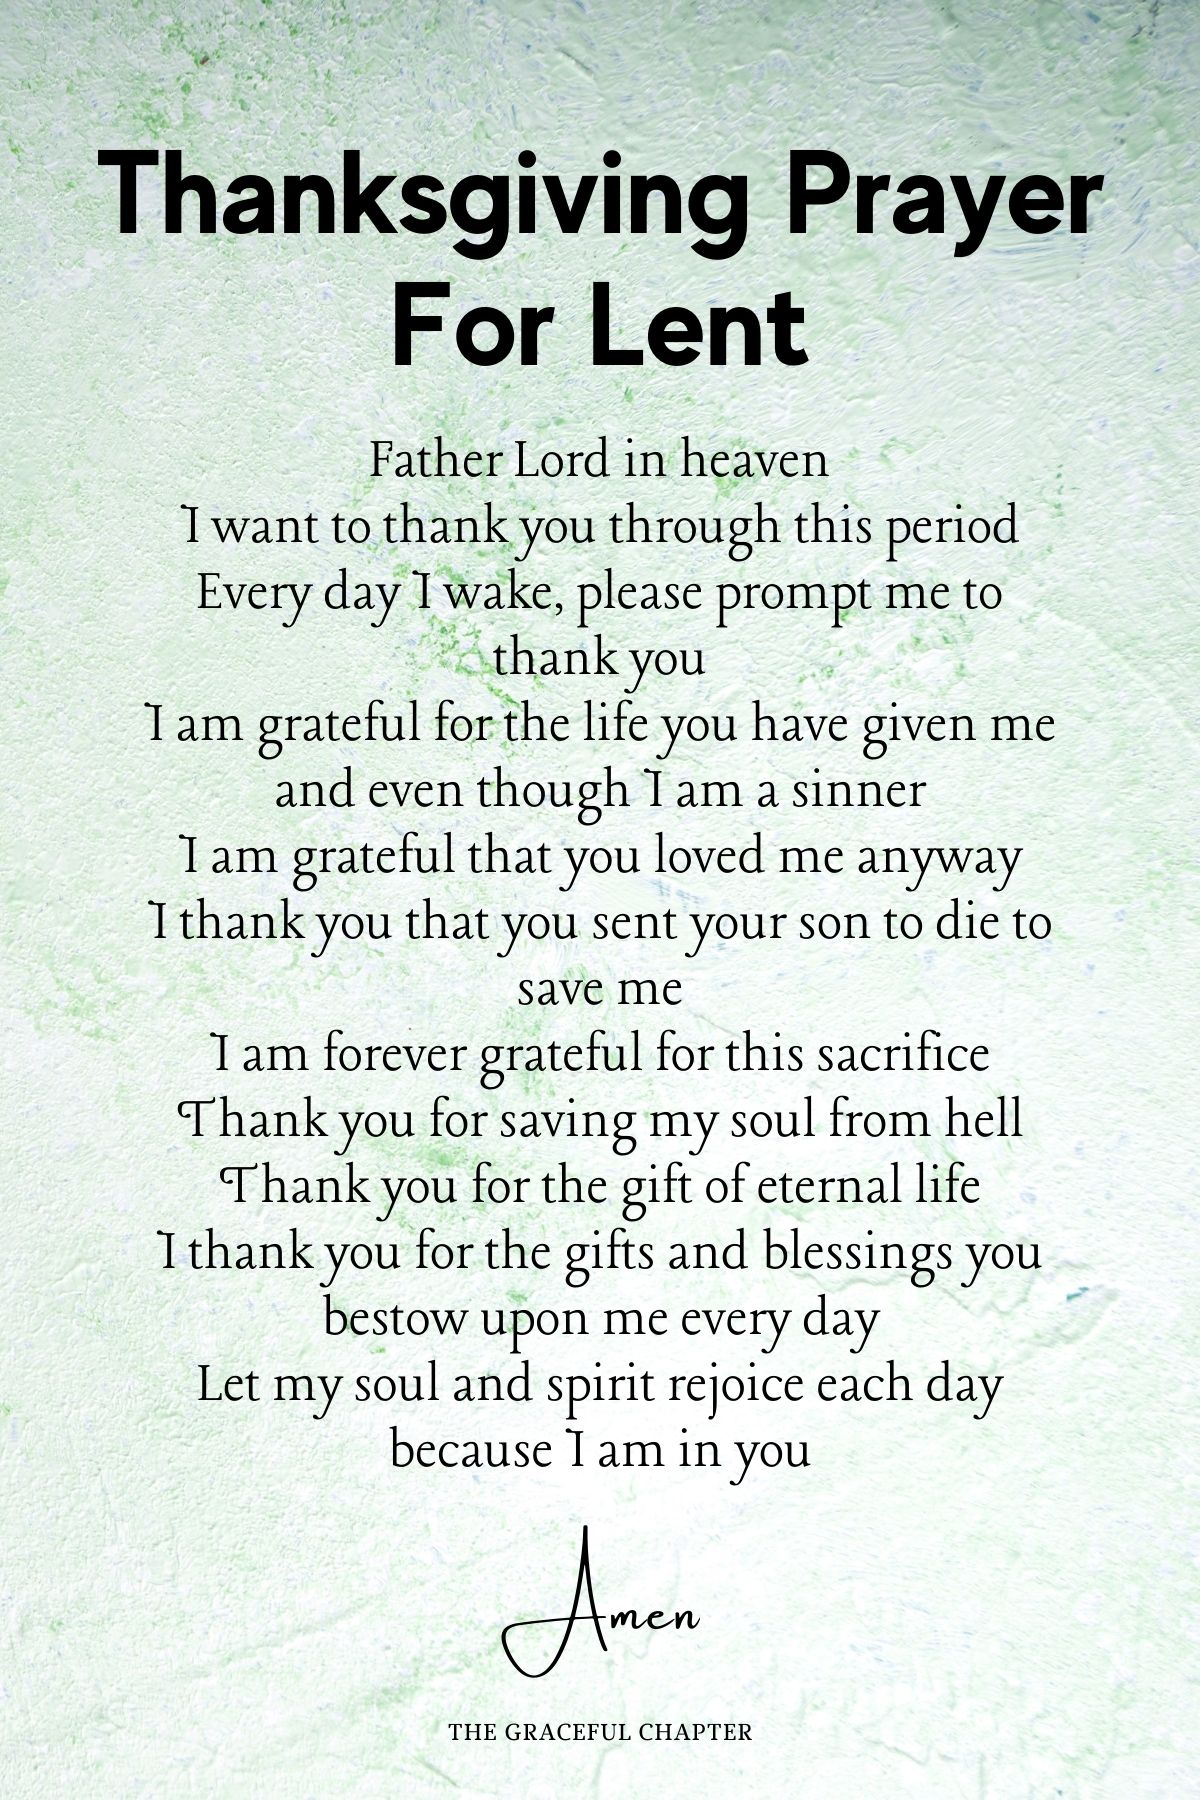 Thanksgiving prayer for lent